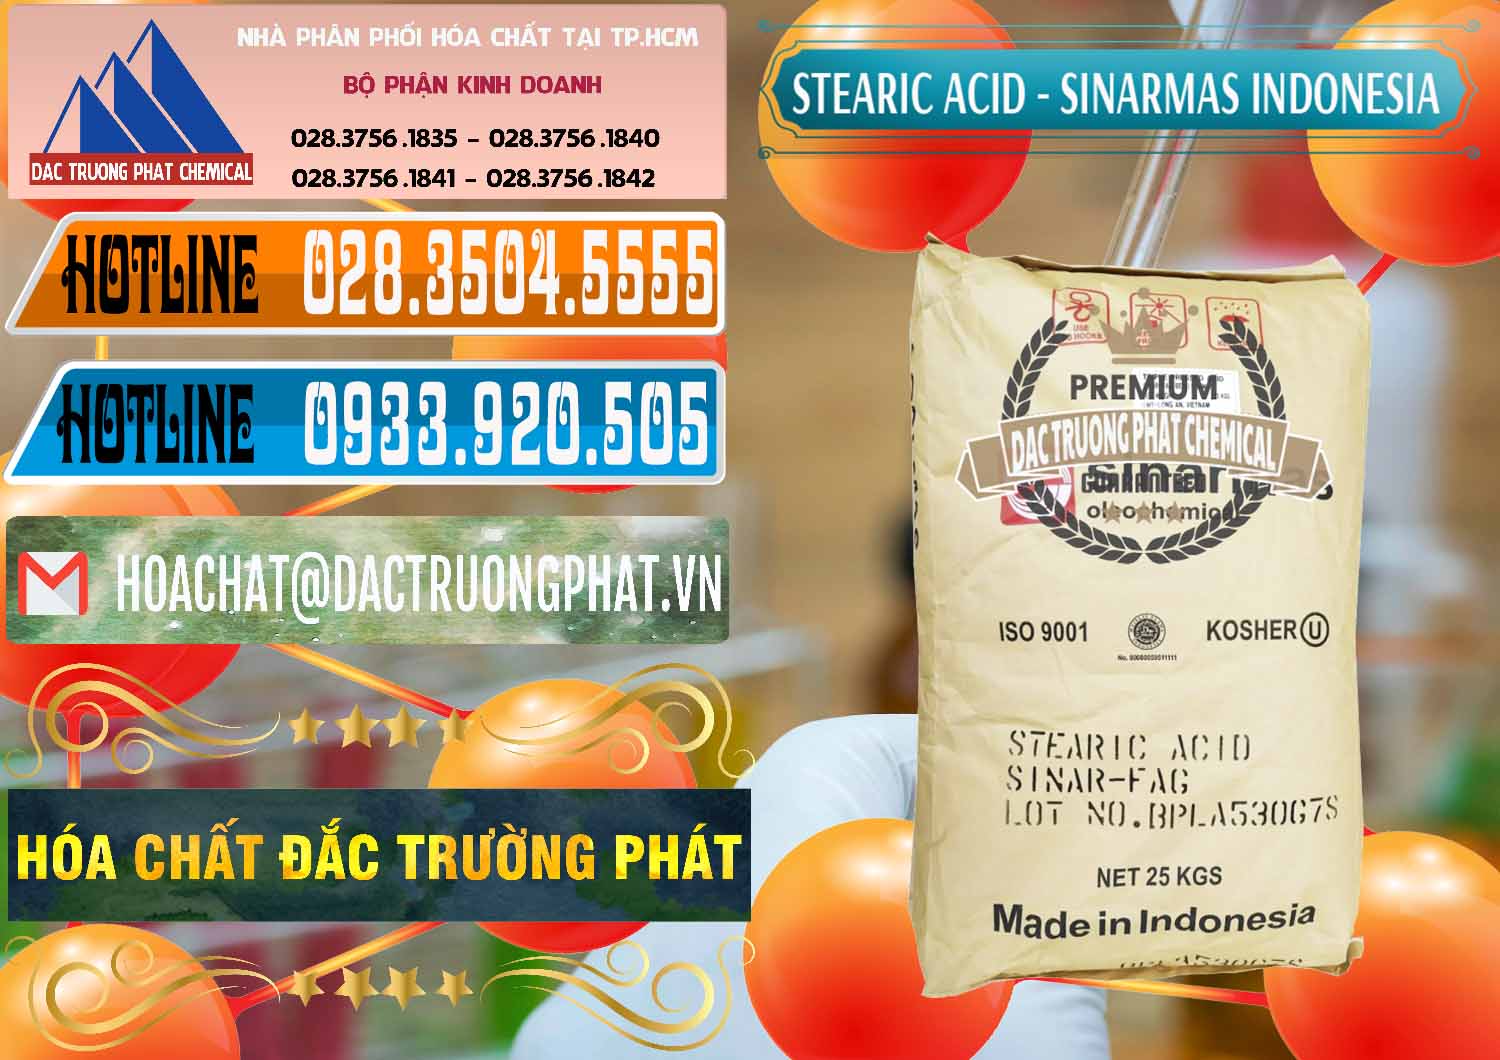 Đơn vị chuyên cung cấp - bán Axit Stearic - Stearic Acid Sinarmas Indonesia - 0389 - Cty cung ứng & phân phối hóa chất tại TP.HCM - stmp.net